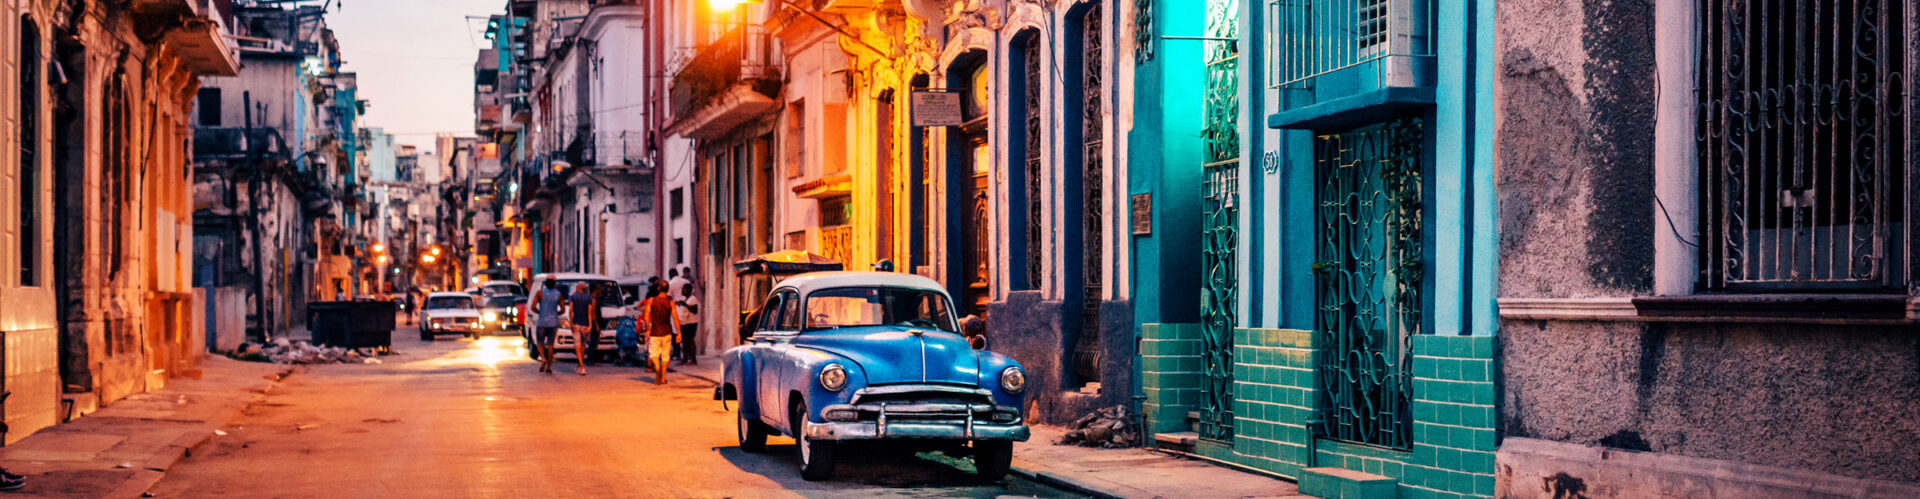 Havanna bei Nacht, Oldtown, Latin America Tours